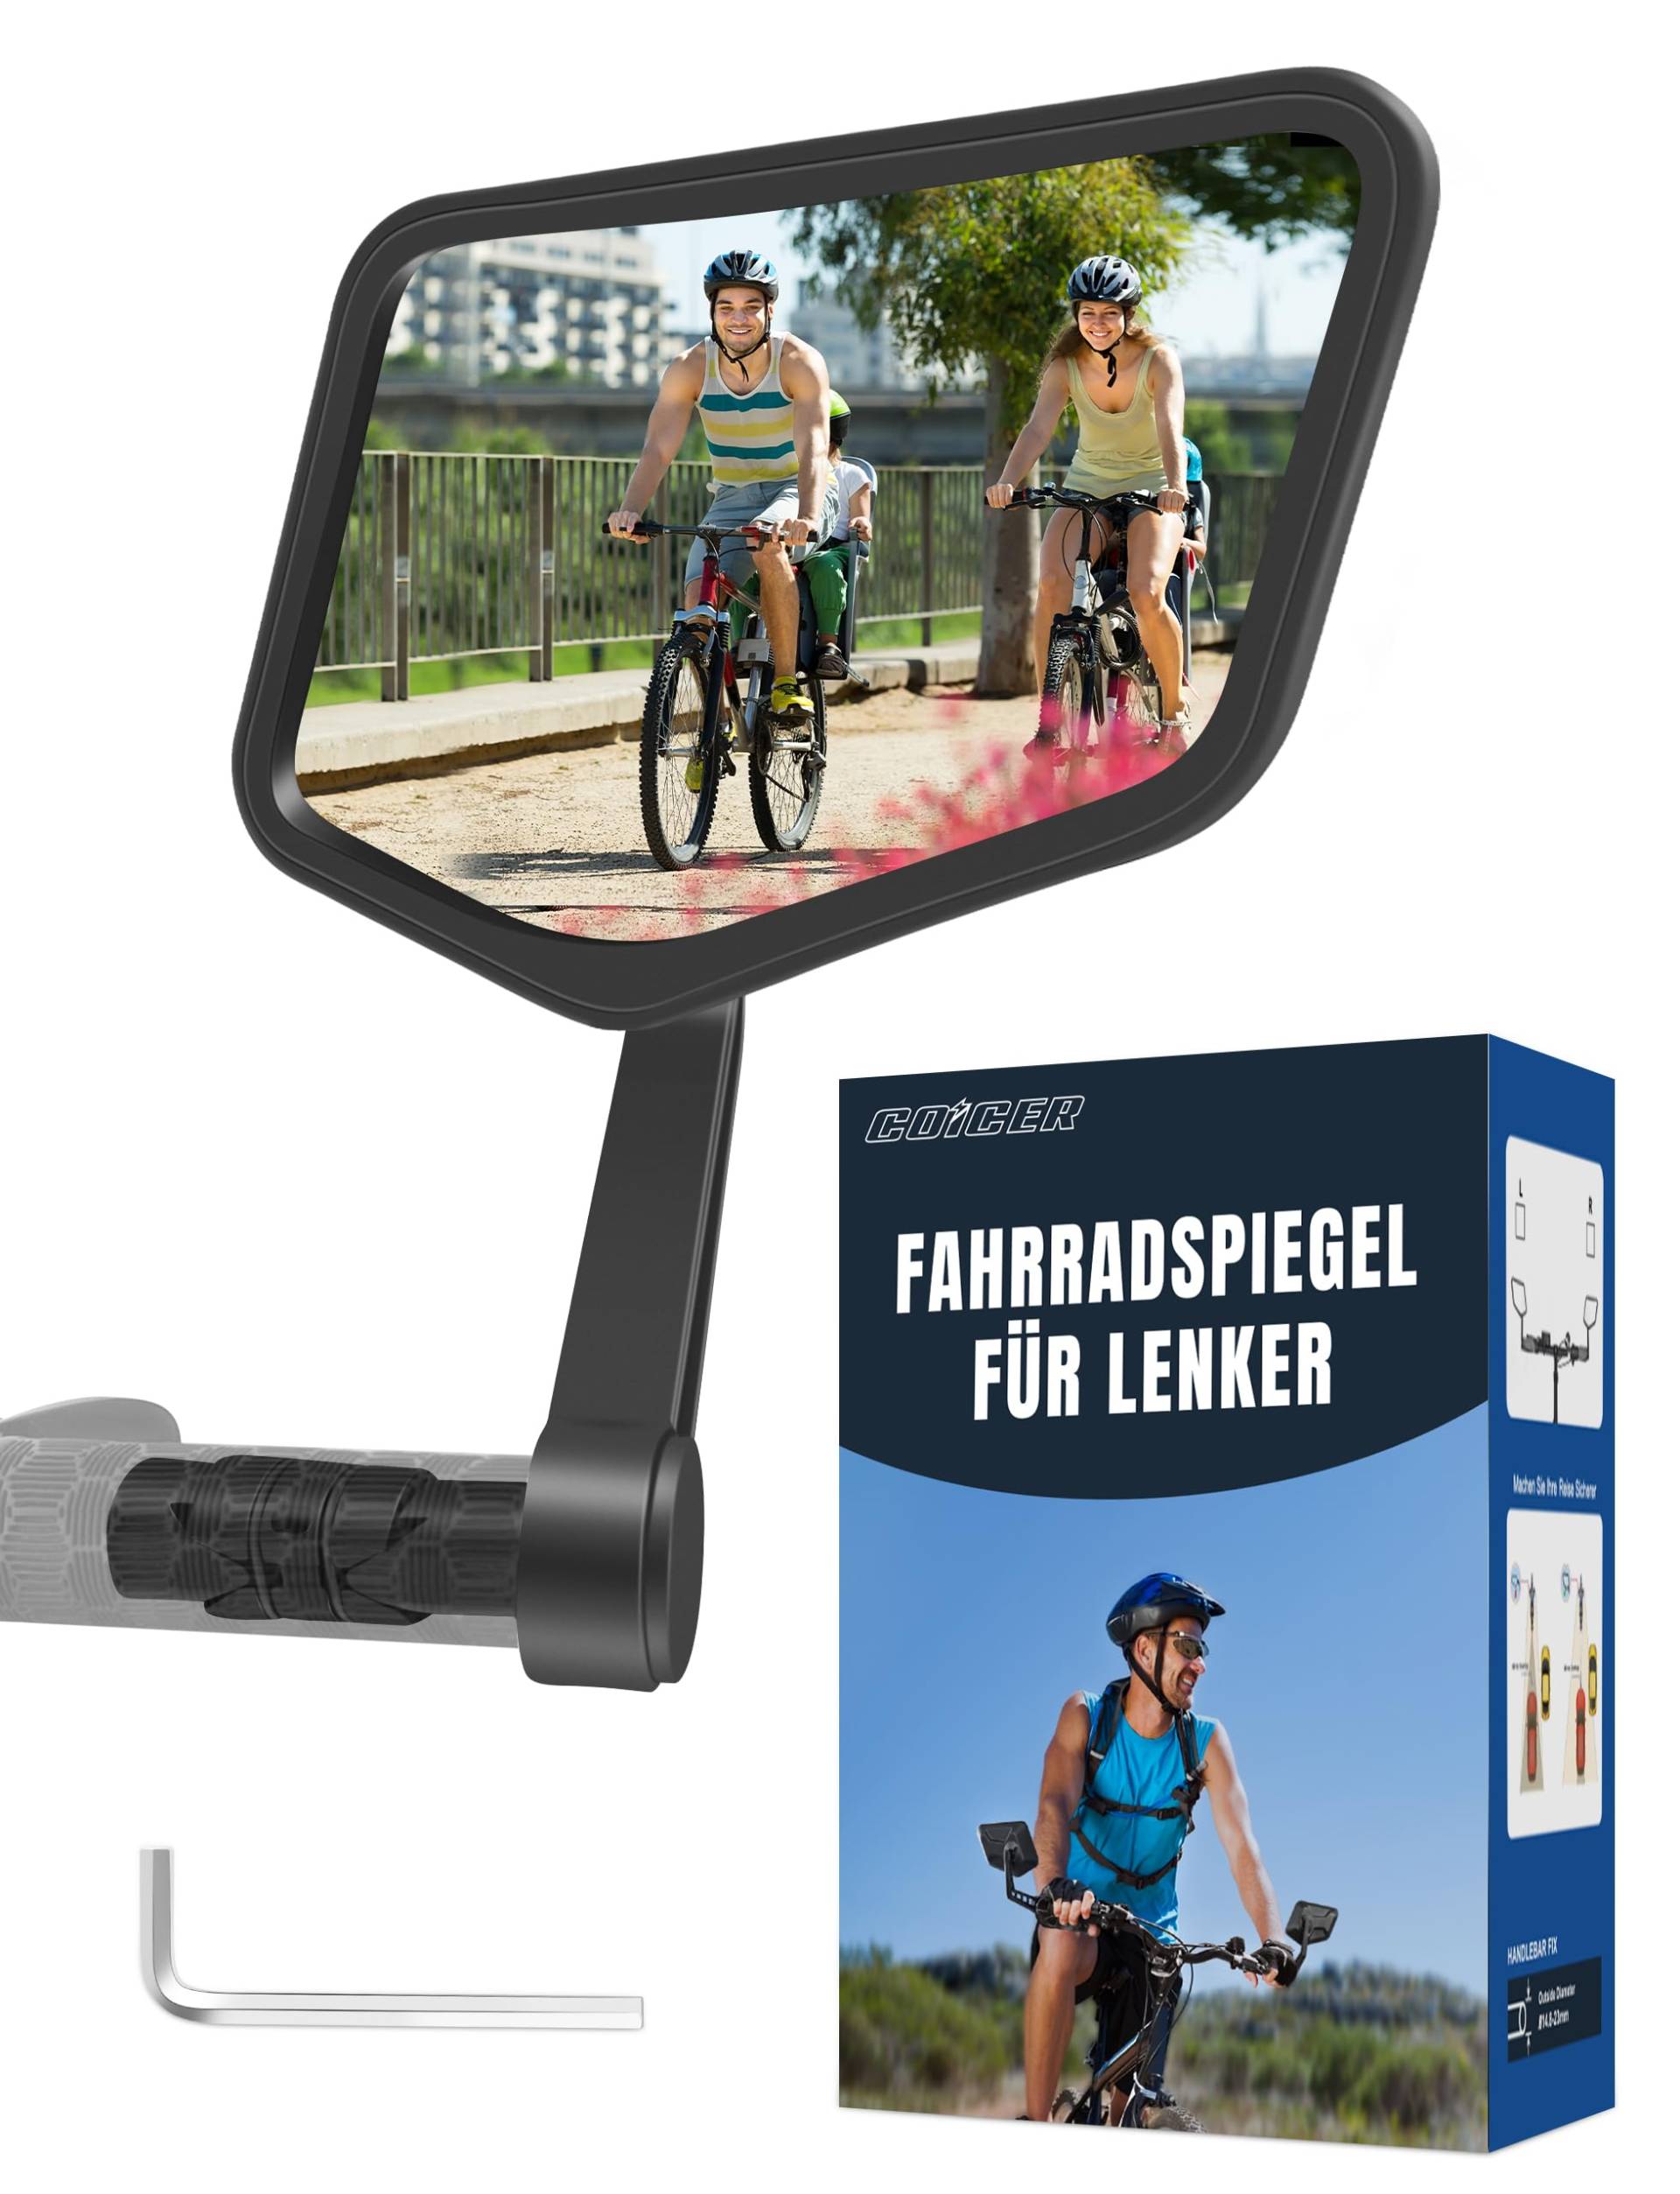 COICER Fahrradspiegel extra große Spiegelfläche |schlagfestes Echtglas| für Lenker ebike | Rückspiegel Fahrrad Spiegel für e-bike, klappbar (rechts) von COICER